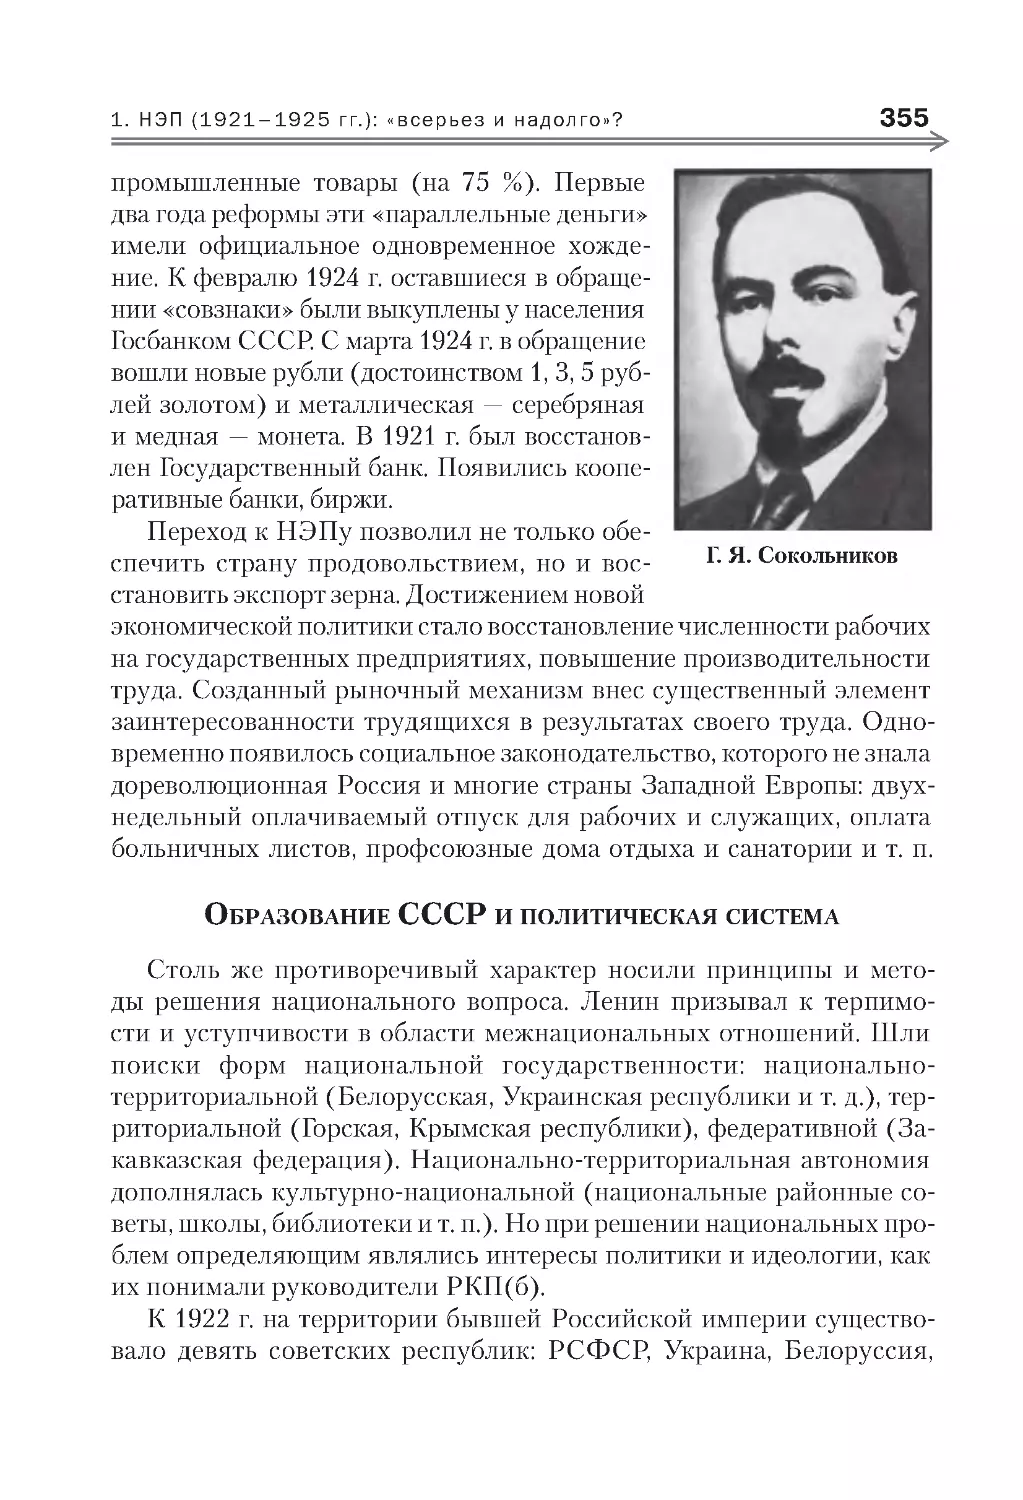 Образование СССР и политическая система